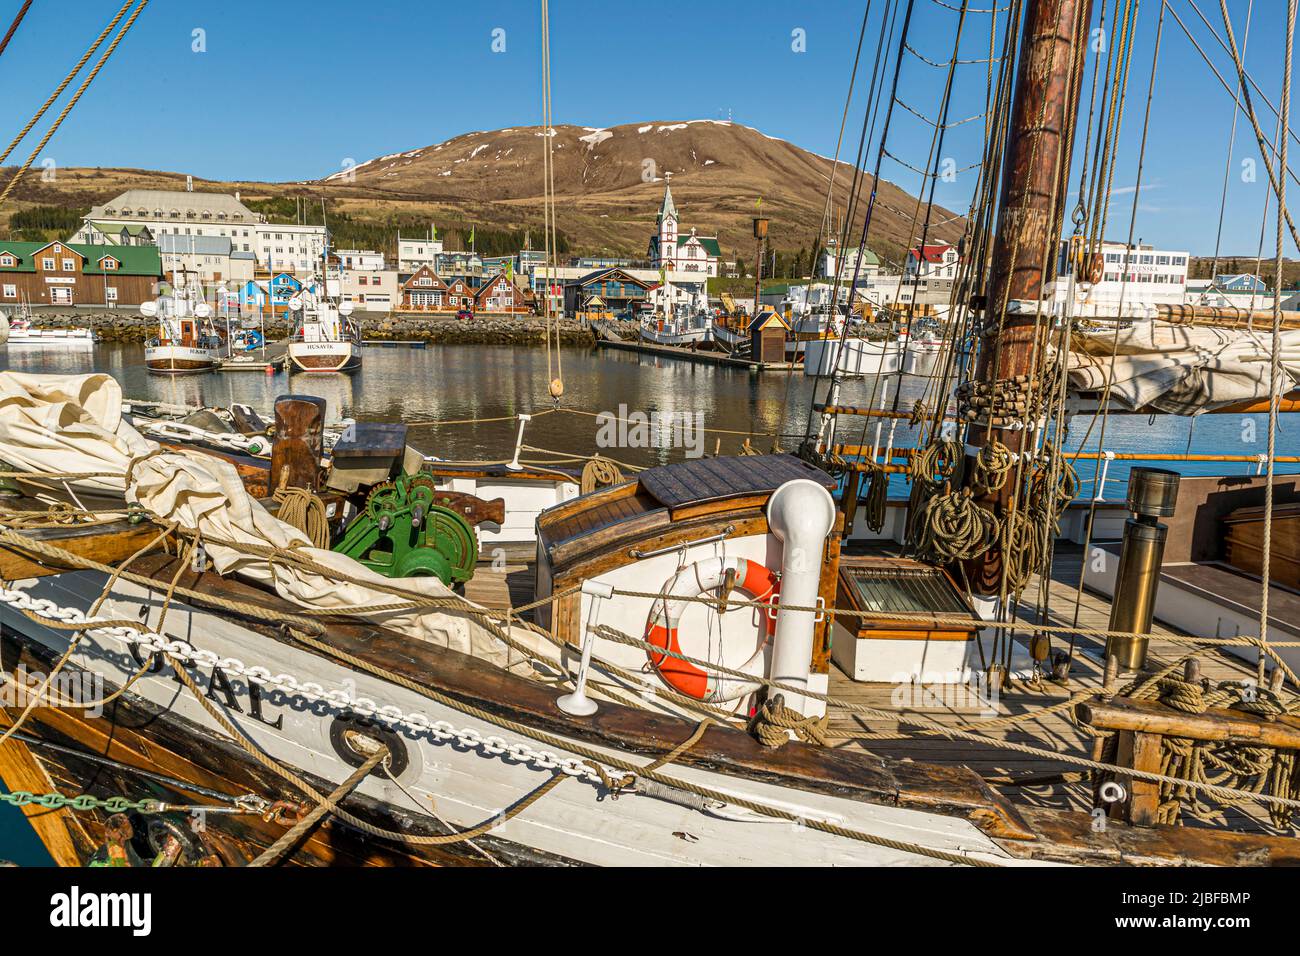 Nel porto di Húsavík sono ormeggiate numerose barche a vela storiche in legno Foto Stock